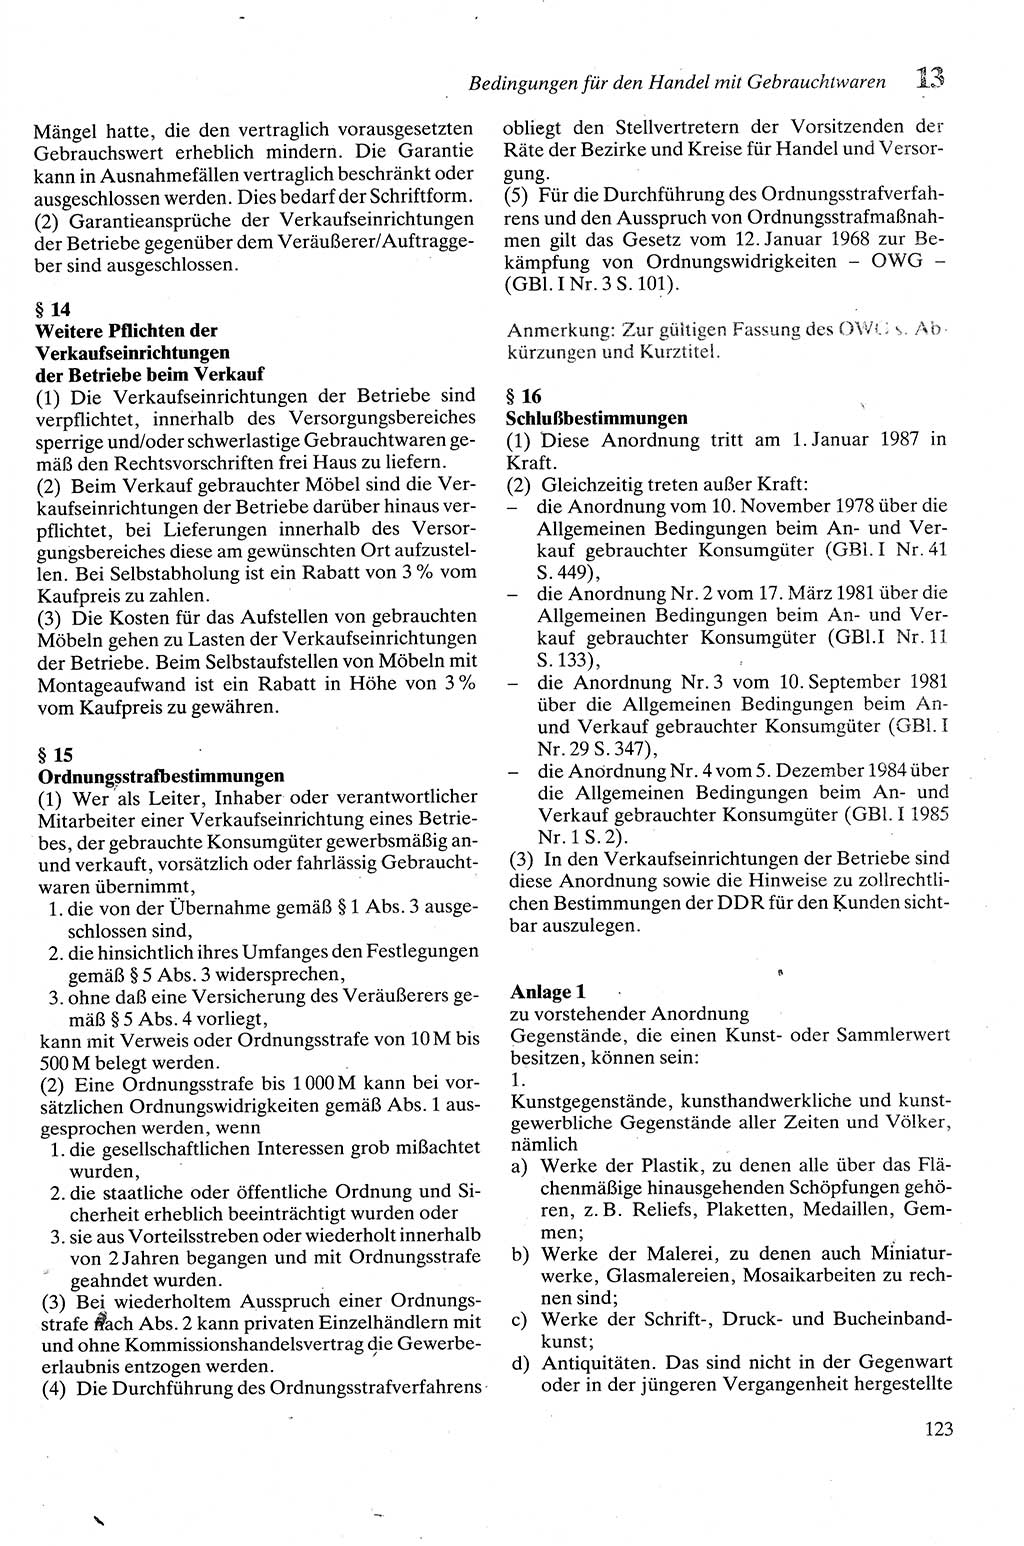 Zivilgesetzbuch (ZVG) sowie angrenzende Gesetze und Bestimmungen [Deutsche Demokratische Republik (DDR)] 1975, Seite 123 (ZGB Ges. Best. DDR 1975, S. 123)